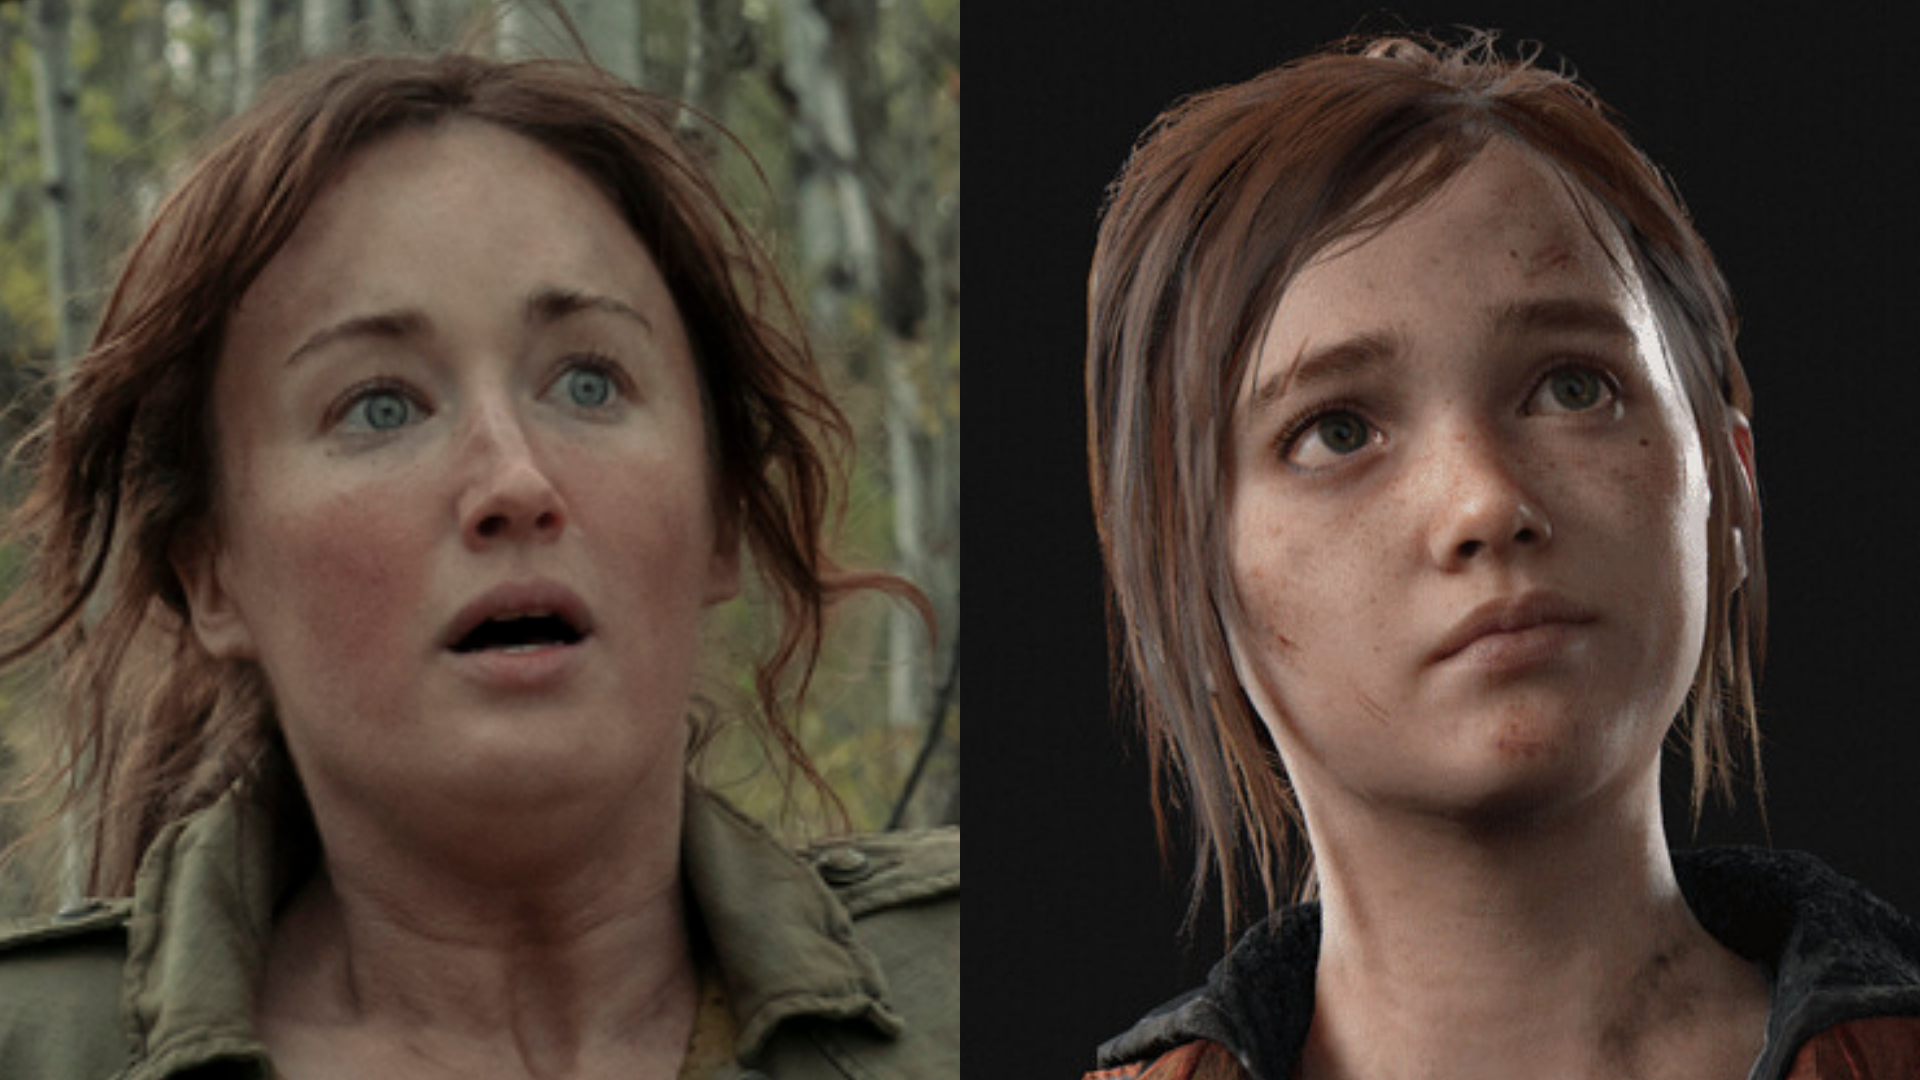 The Last of Us Fandom on X: Troy Baker foi o ator de Joel em ambos os jogos  de #TheLastOfUs. Ashley Johnson foi a atriz de Ellie em ambos os jogos  também.